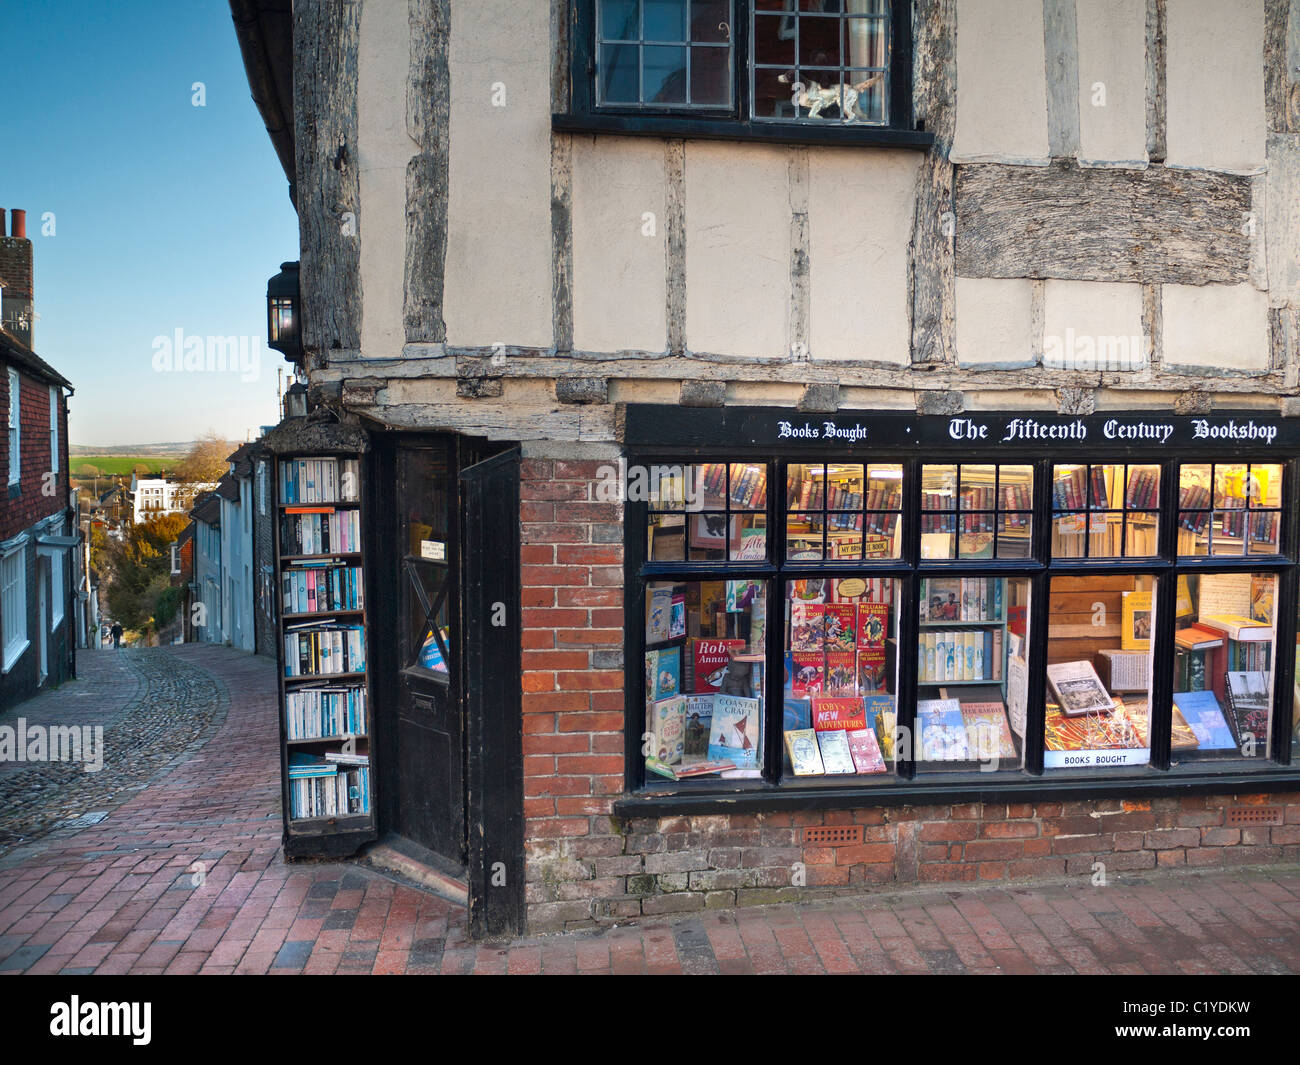 BOOK SHOP negozio antiquario xv secolo book shop Lewes High Street East Sussex Regno Unito Foto Stock